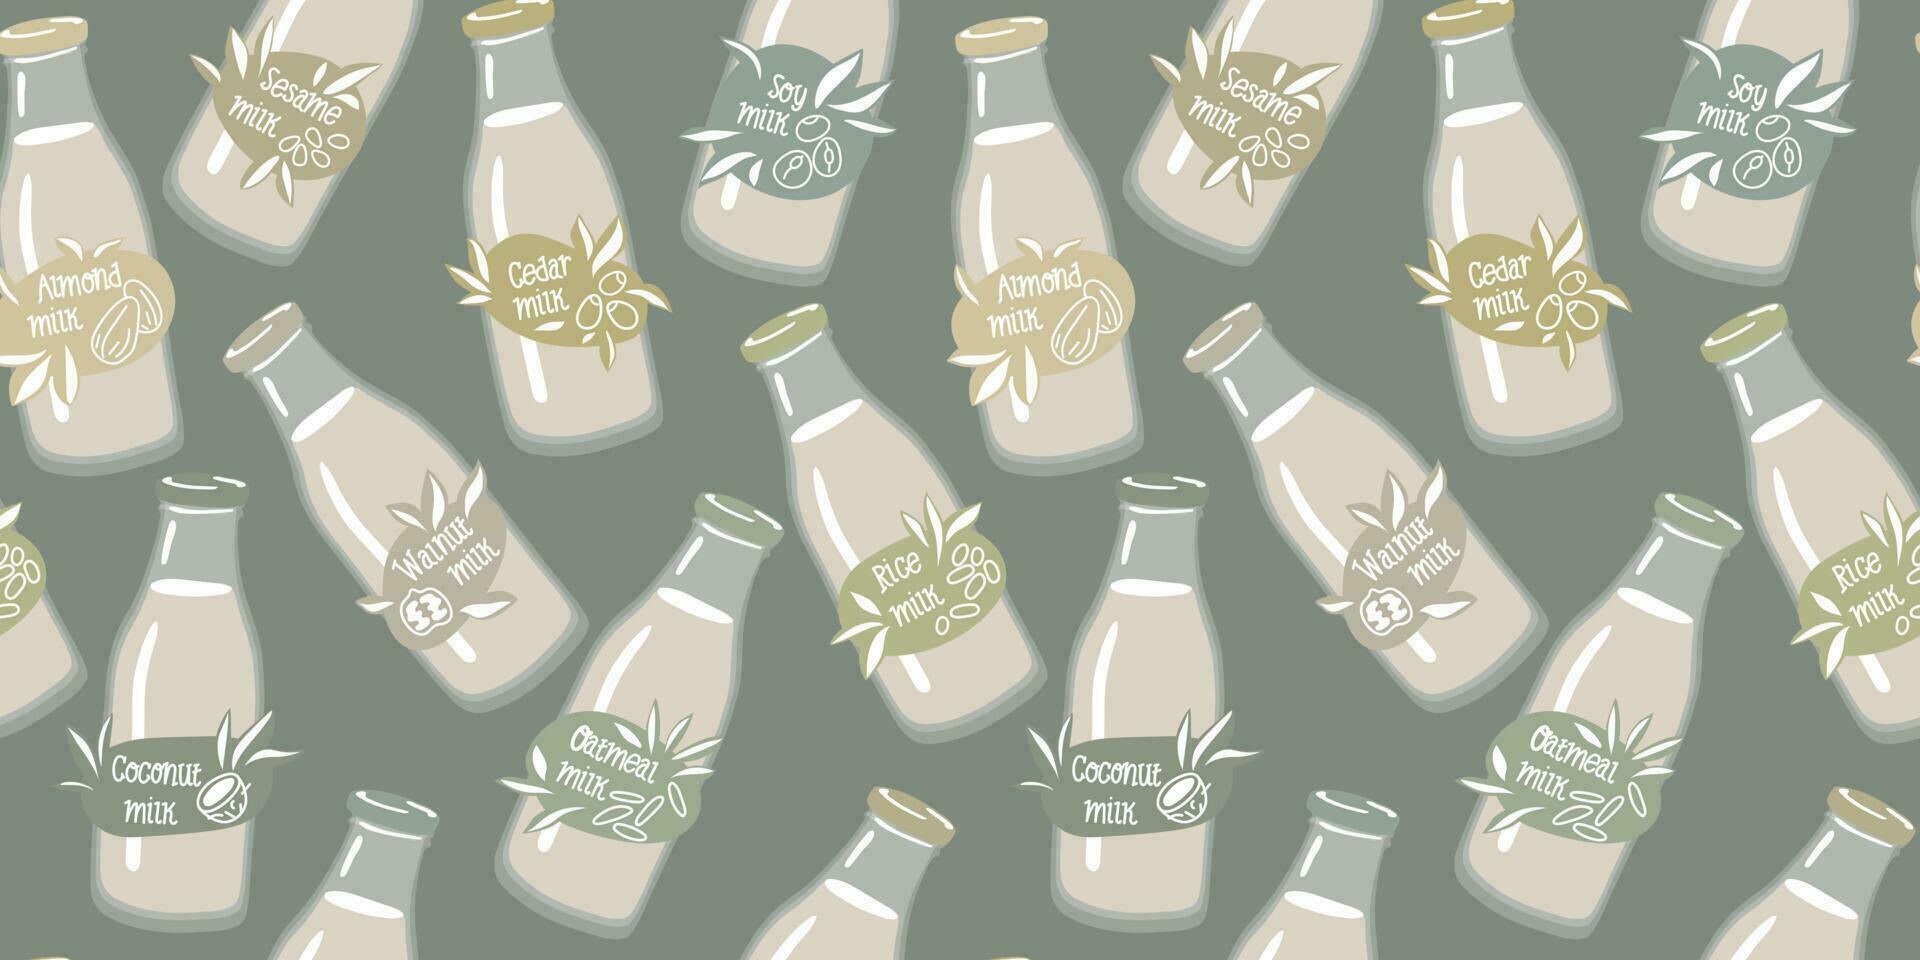 en mönster av glas flaskor med vegetabiliska mjölk etiketter. kokos, mandlar, soja, valnöt, ris, gröt, etc. vektor bakgrund för utskrift på textilier och papper. företag, marknadsföring, vegetarian